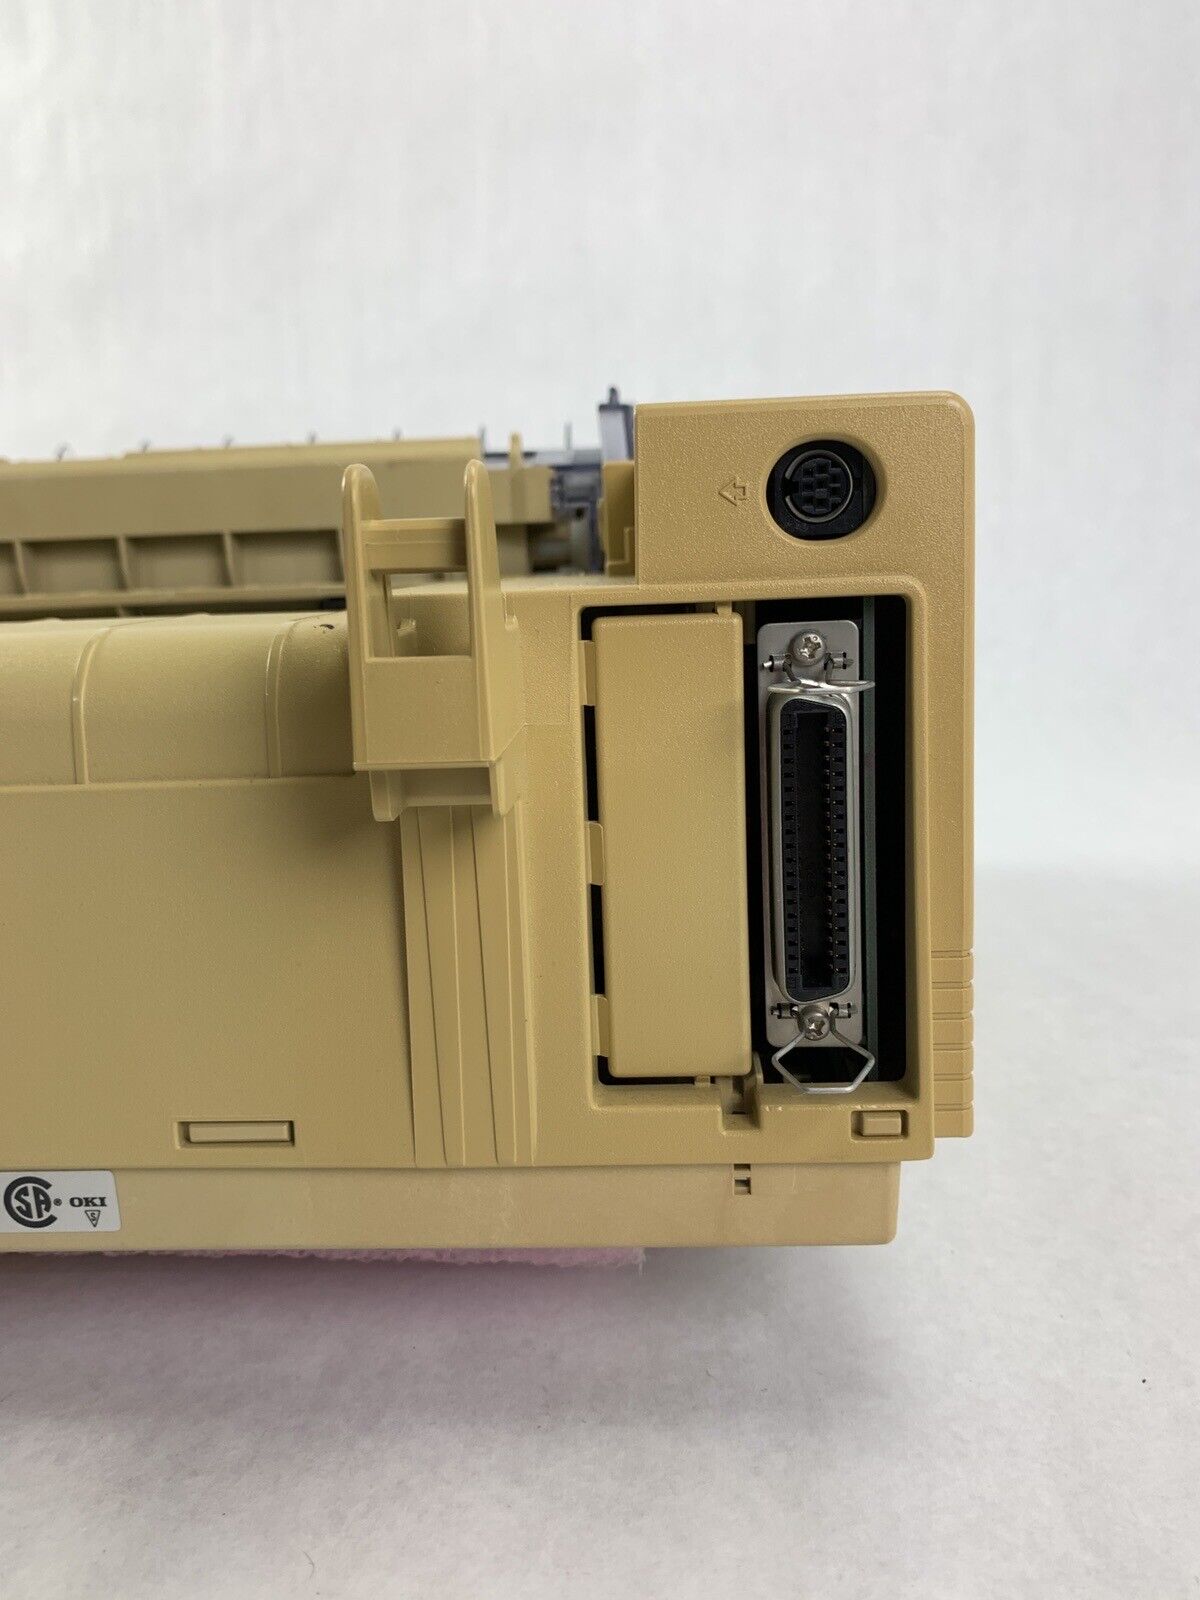 Oki GE 5258A Microline 520 Printer for Parts and Repair